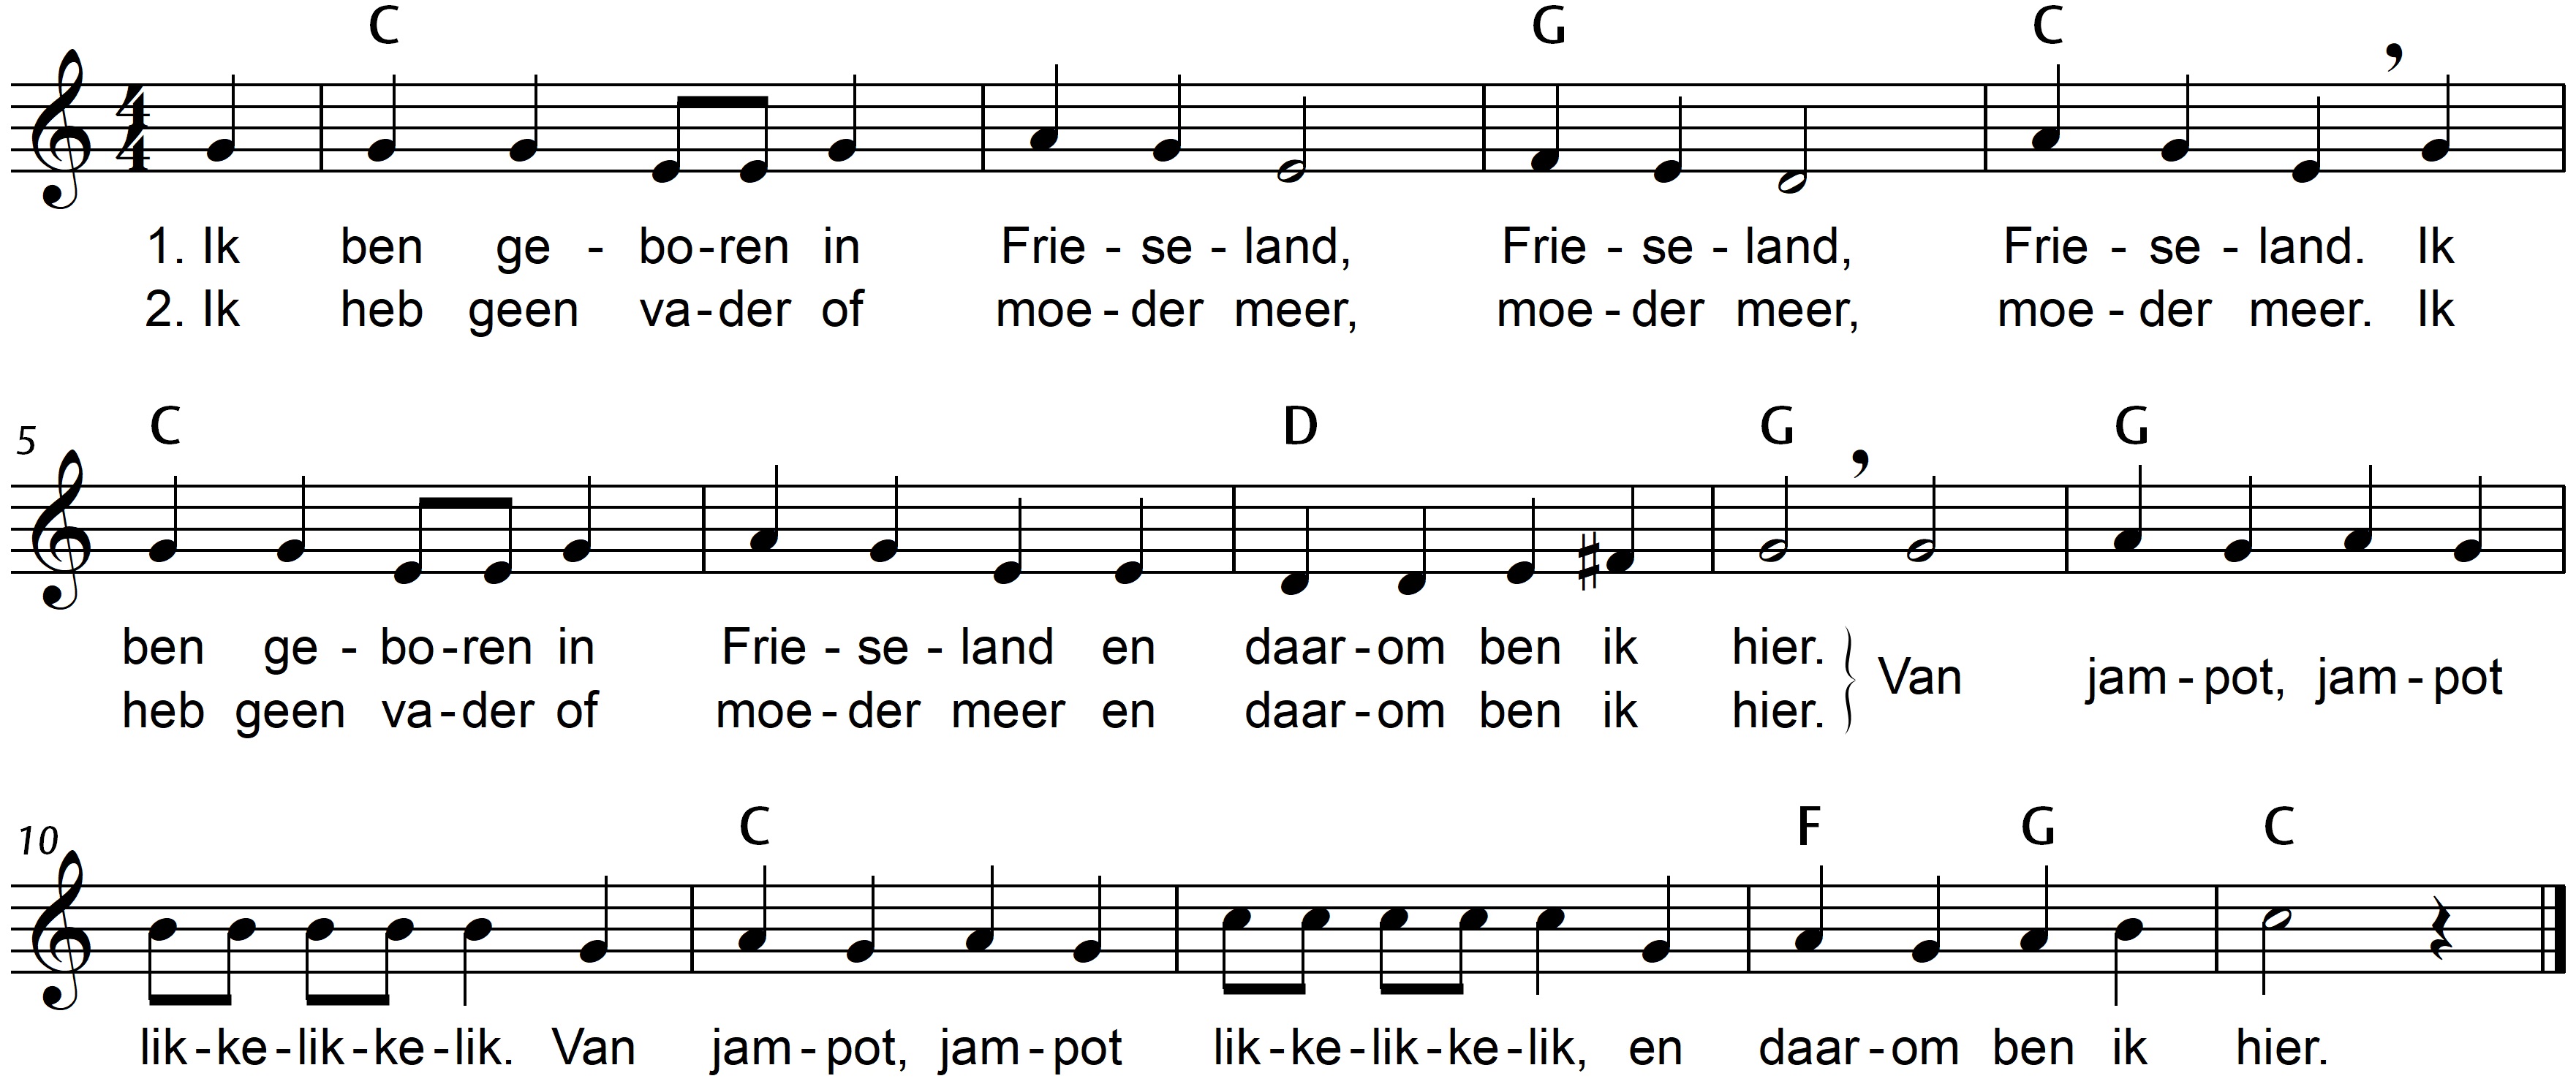 bladmuziek van het lied 'Ik ben geboren in Frieseland', traditioneel liedje bij een klapspel. De originele tekst is gemakkelijk te variëren, bijvoorbeeld 'Ik heb geen knikkers en voetbal meer'. 